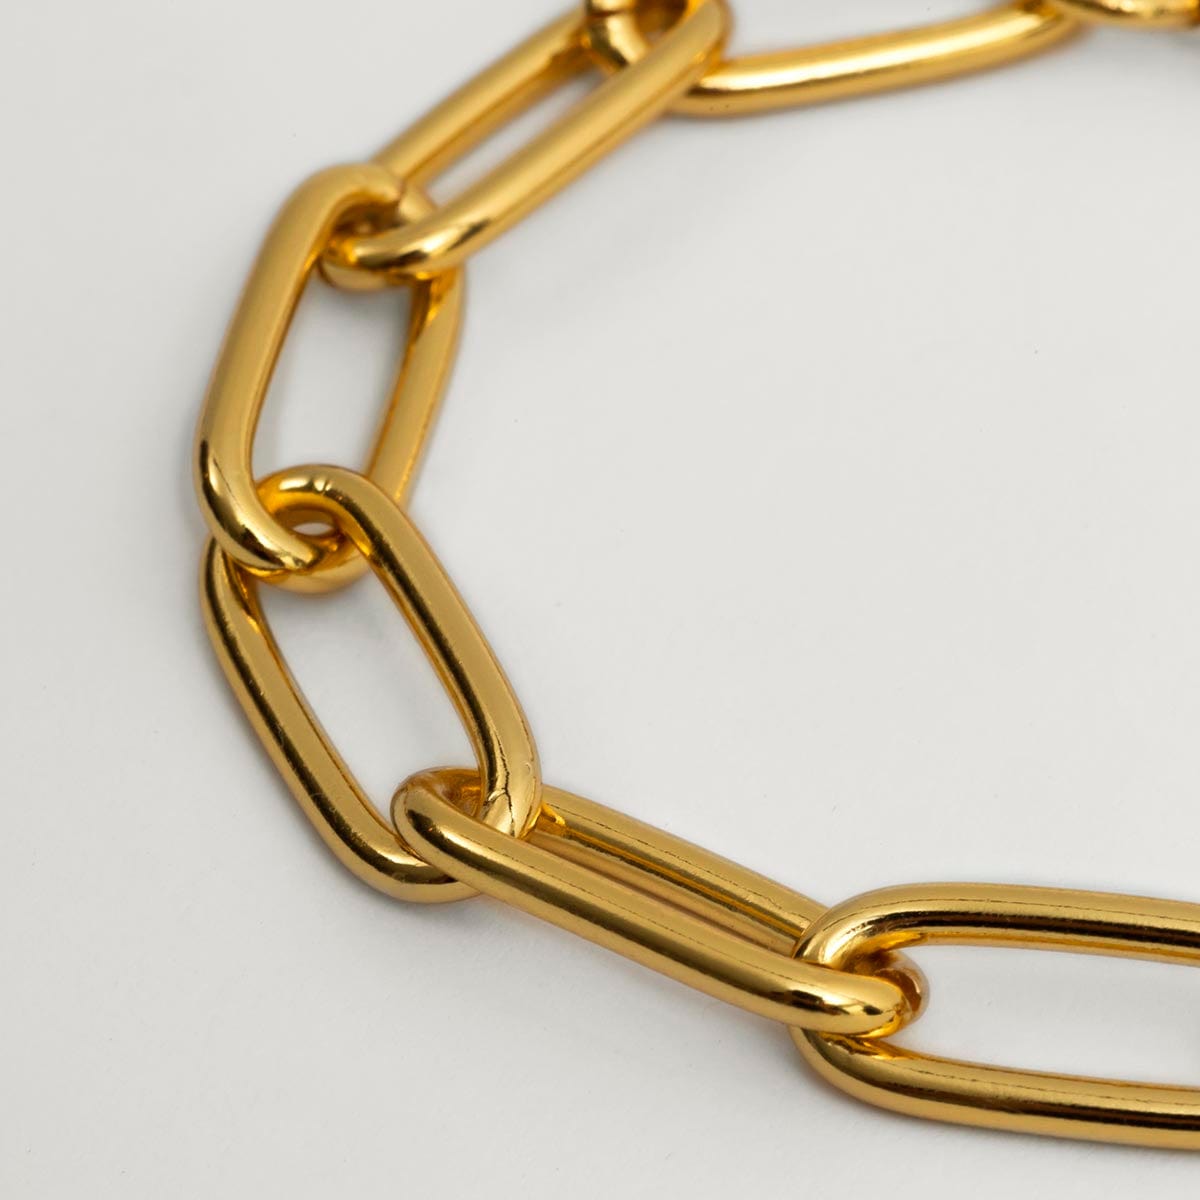 Twojeys bracelet Bold Chain